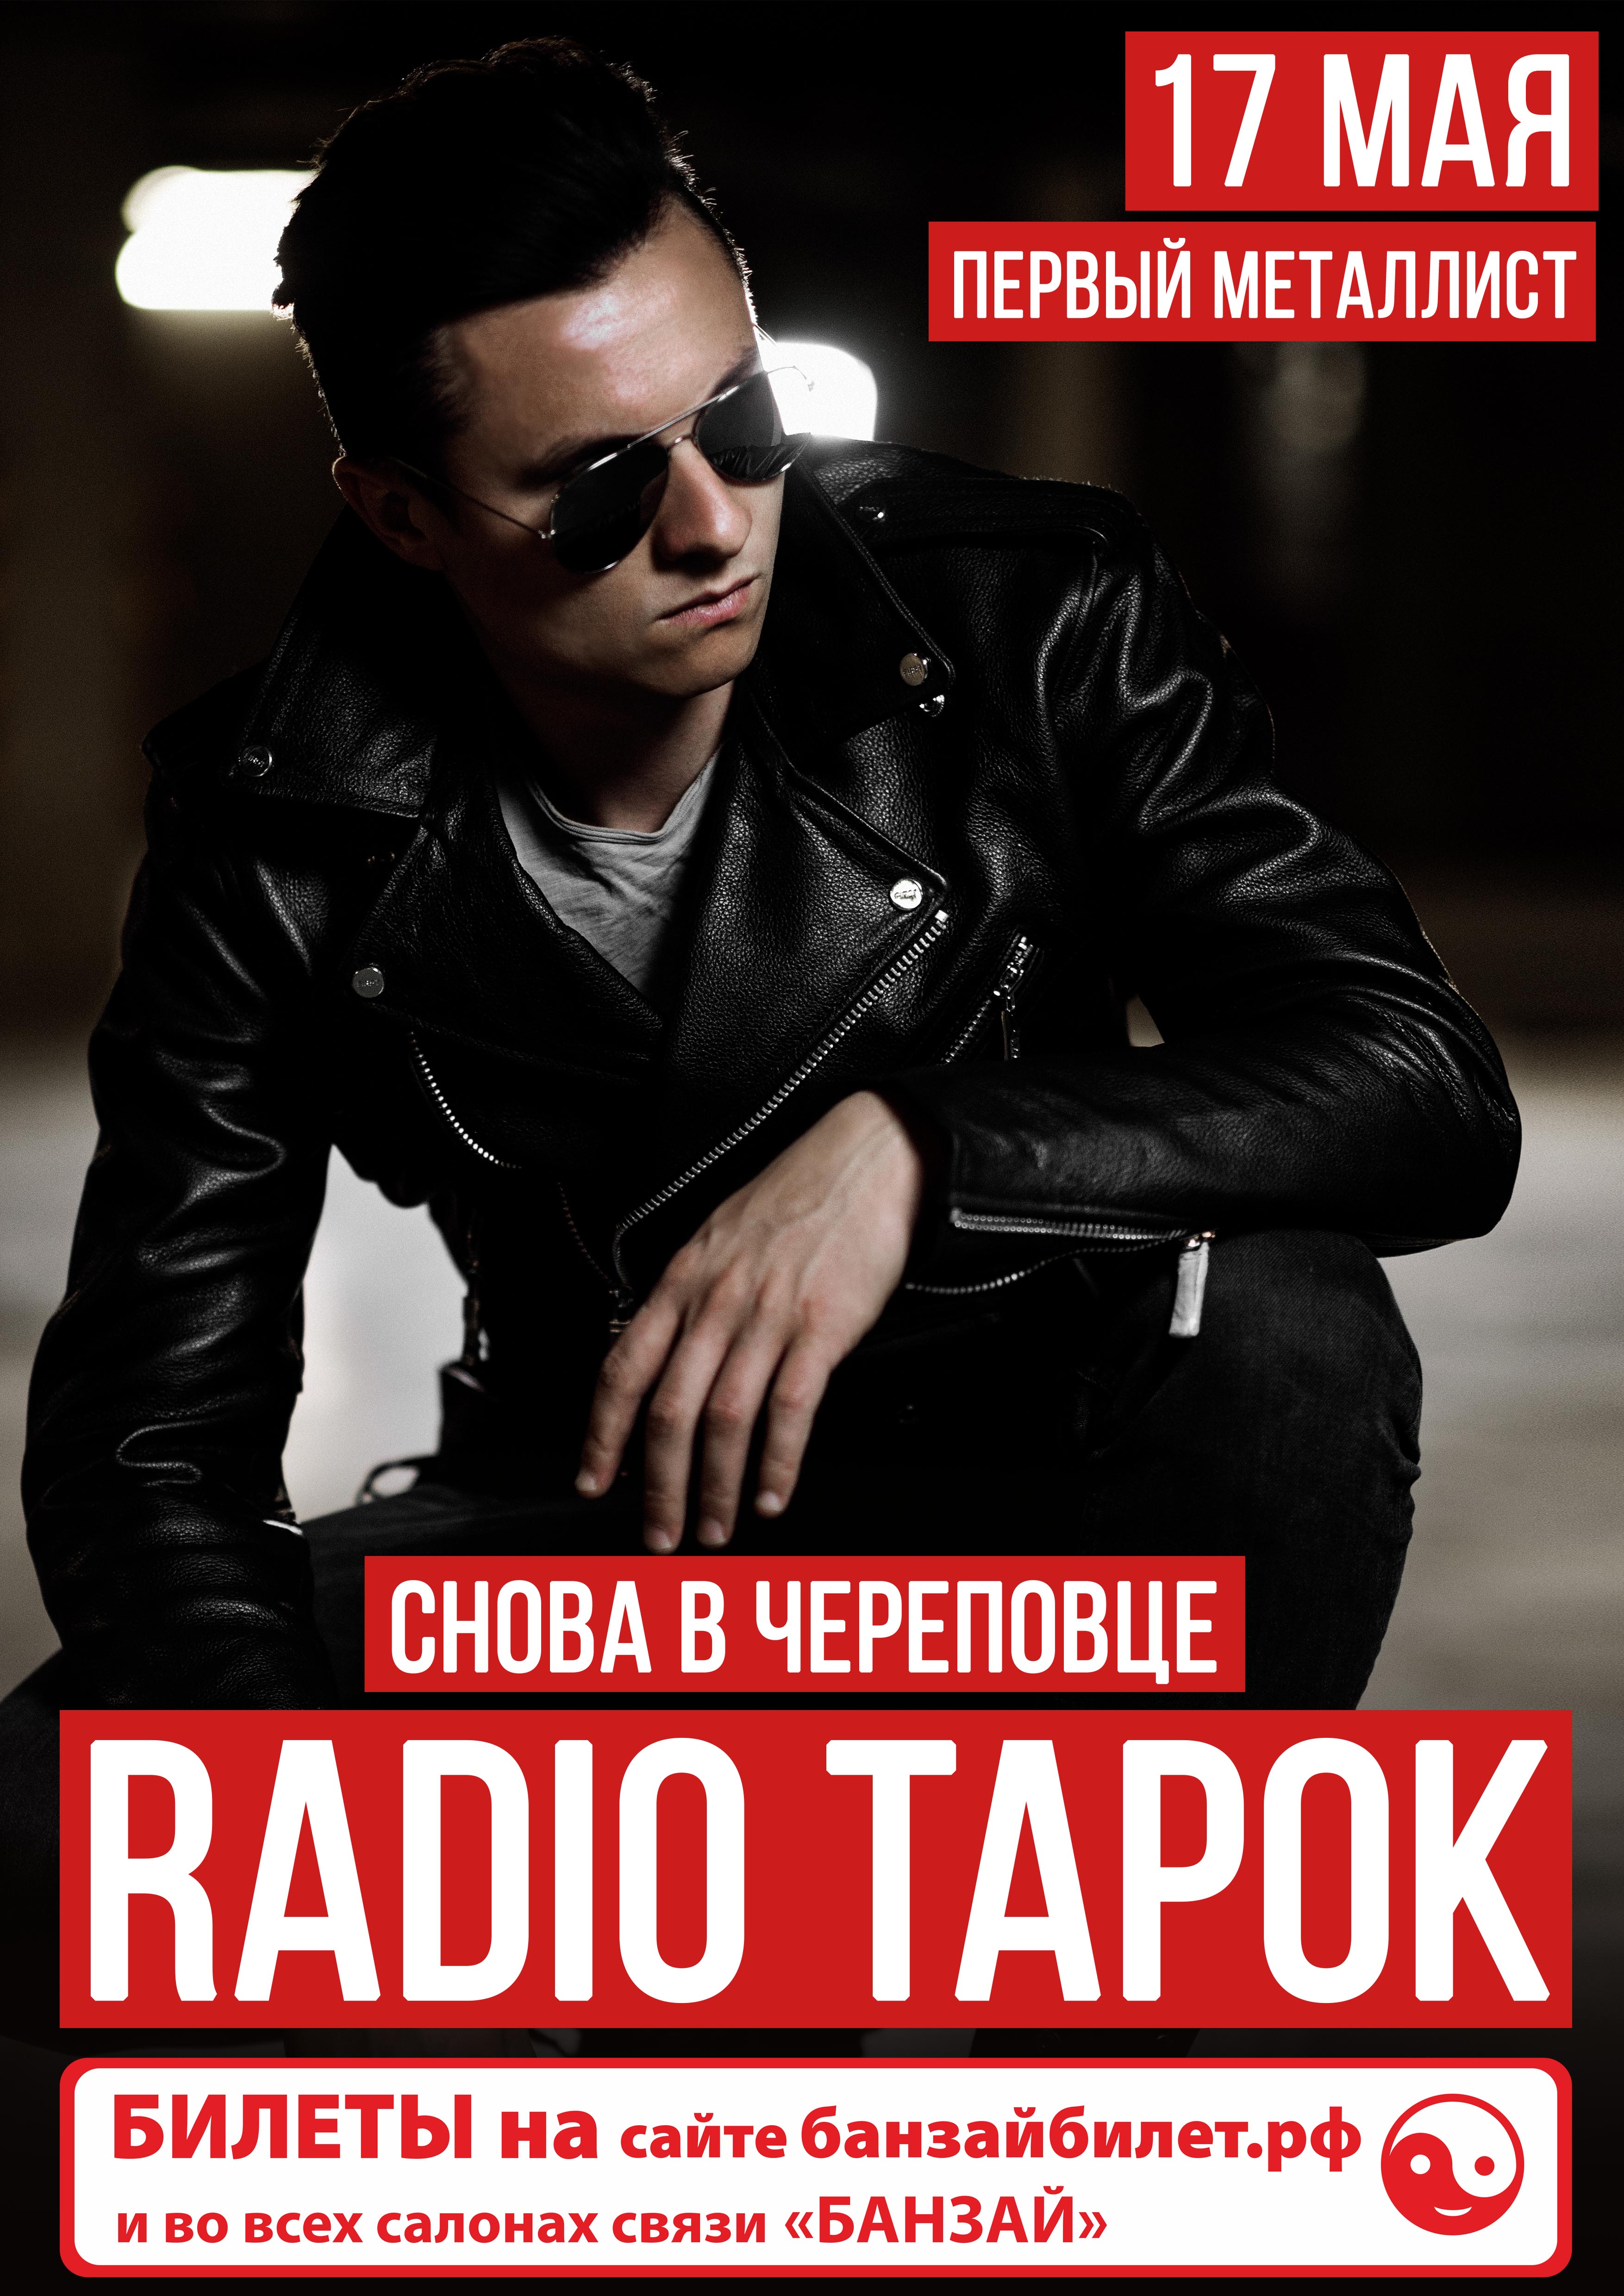 RADIO TAPOK в Череповце.  С новой концертной программой #РАДИОТАЩИТ 